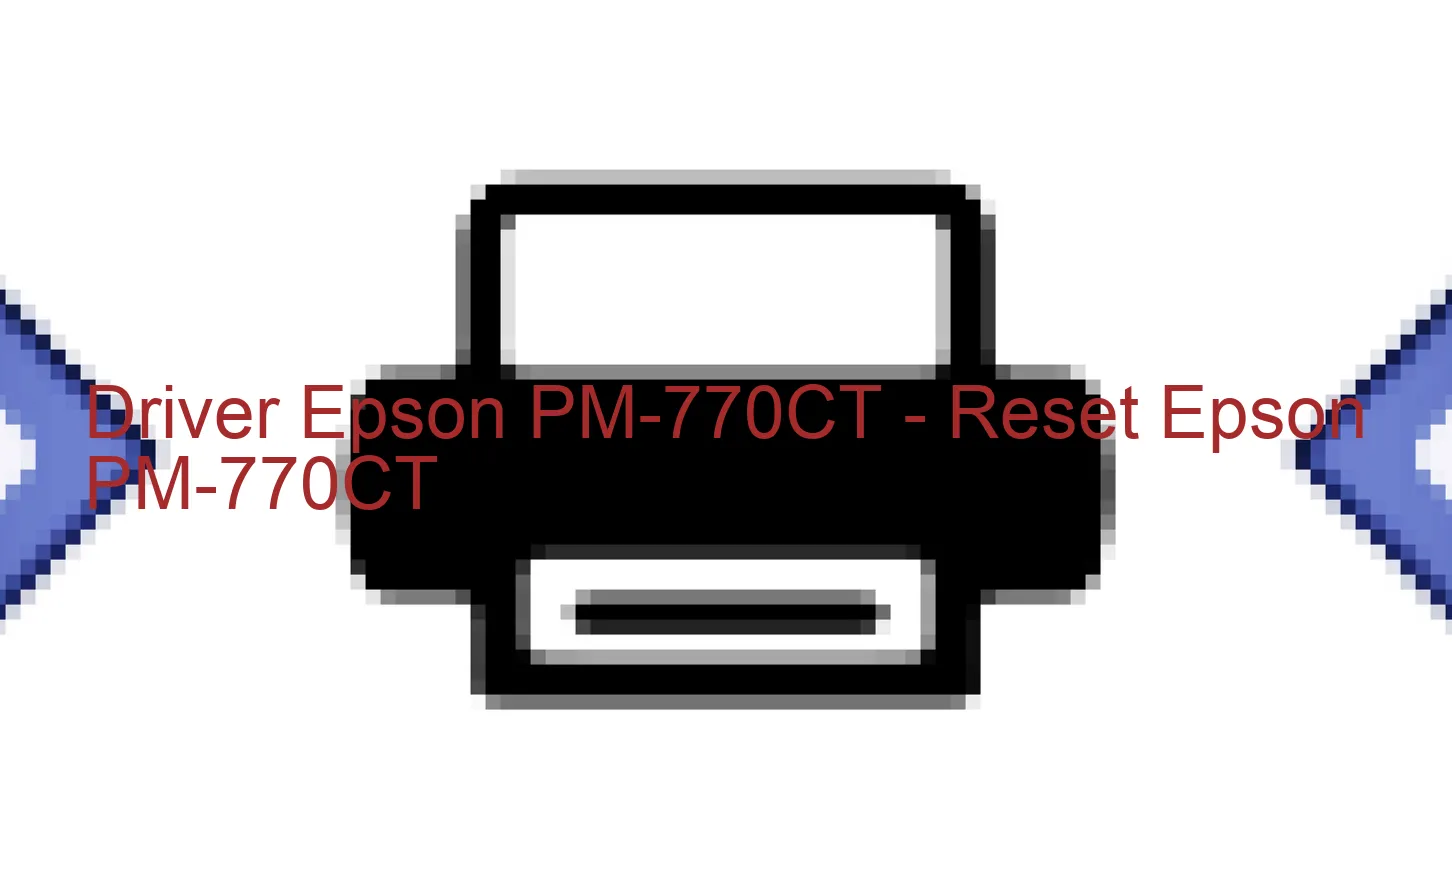 Epson PM-770CTのドライバー、Epson PM-770CTのリセットソフトウェア